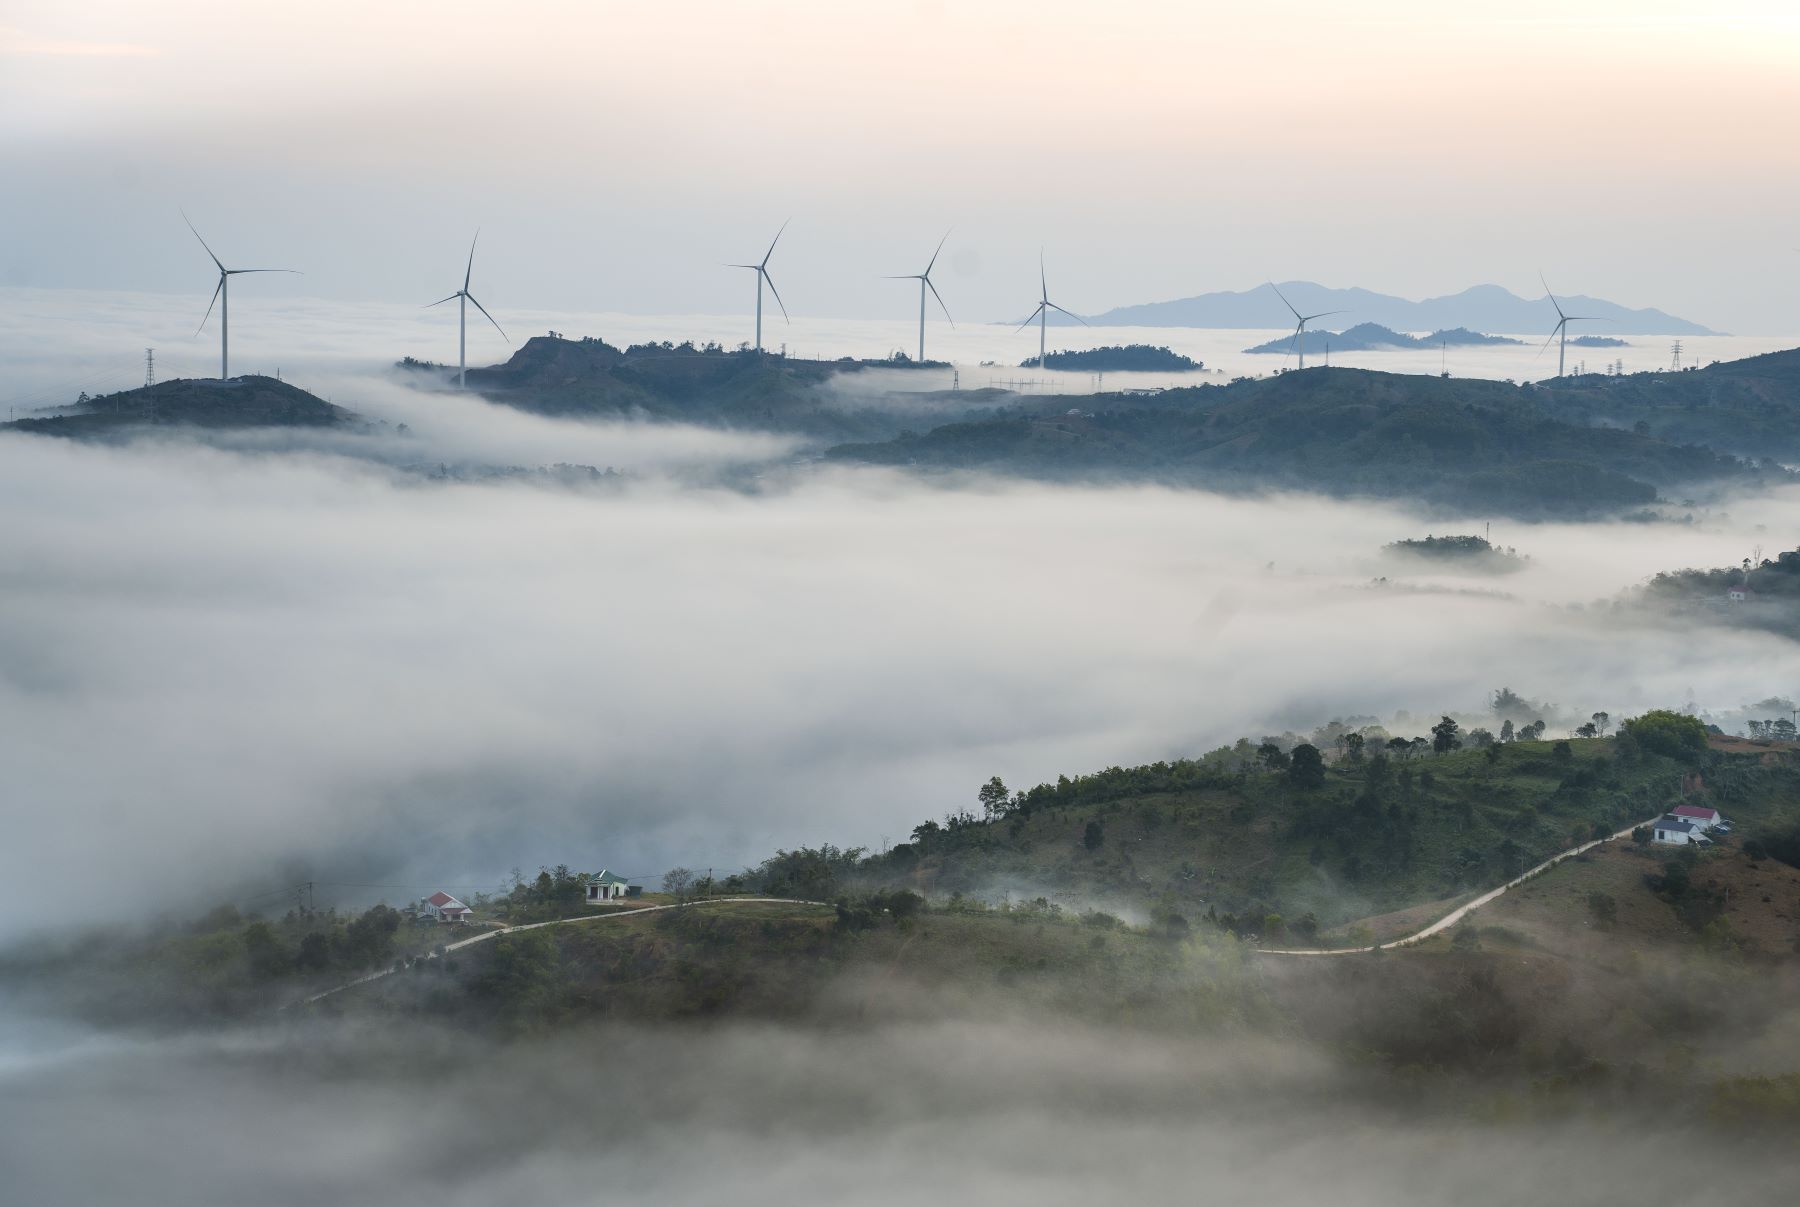 Biển mây vào sáng sớm khiến Nguyễn Thị Hải Lương và nhóm bạn thích thú. “Mây, cánh quạt điện gió và thiên nhiên quanh đây rất đẹp, thú vị” - Hải Lương, cho hay.